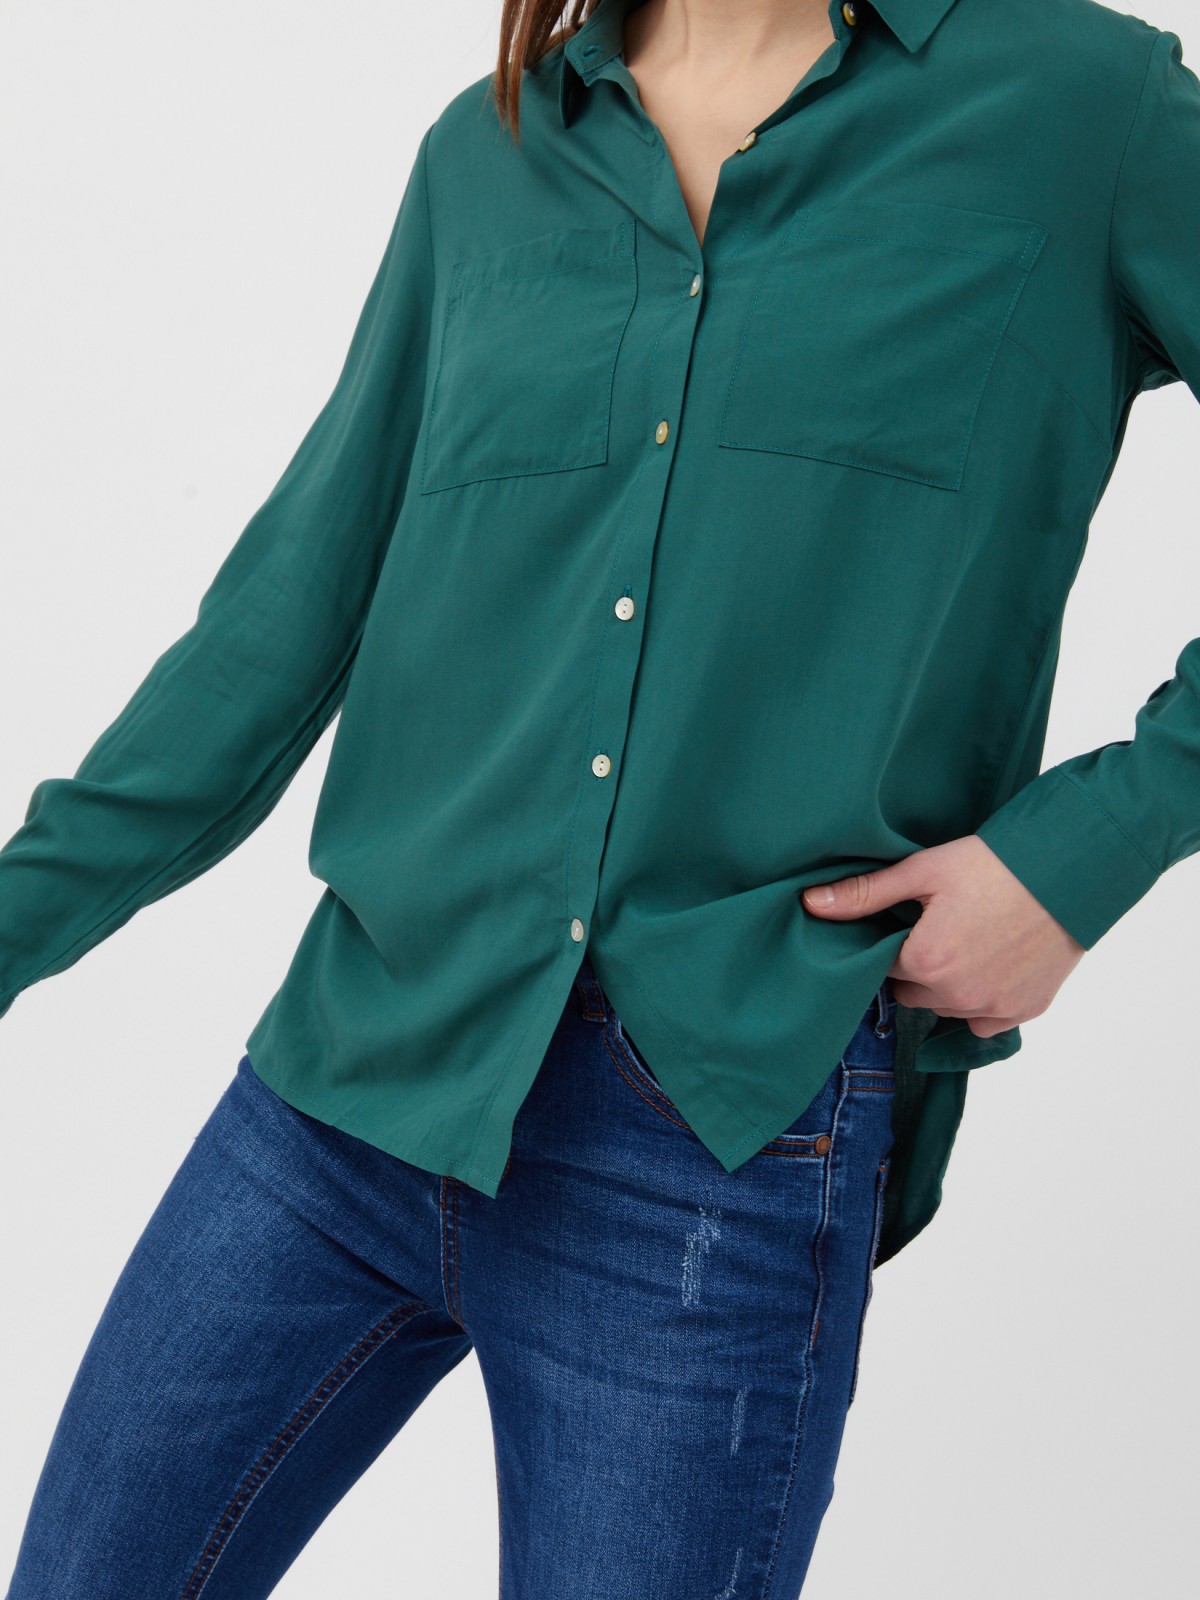 Блузка из вискозы zolla 22121117Y092, цвет зеленый, размер XS - фото 4